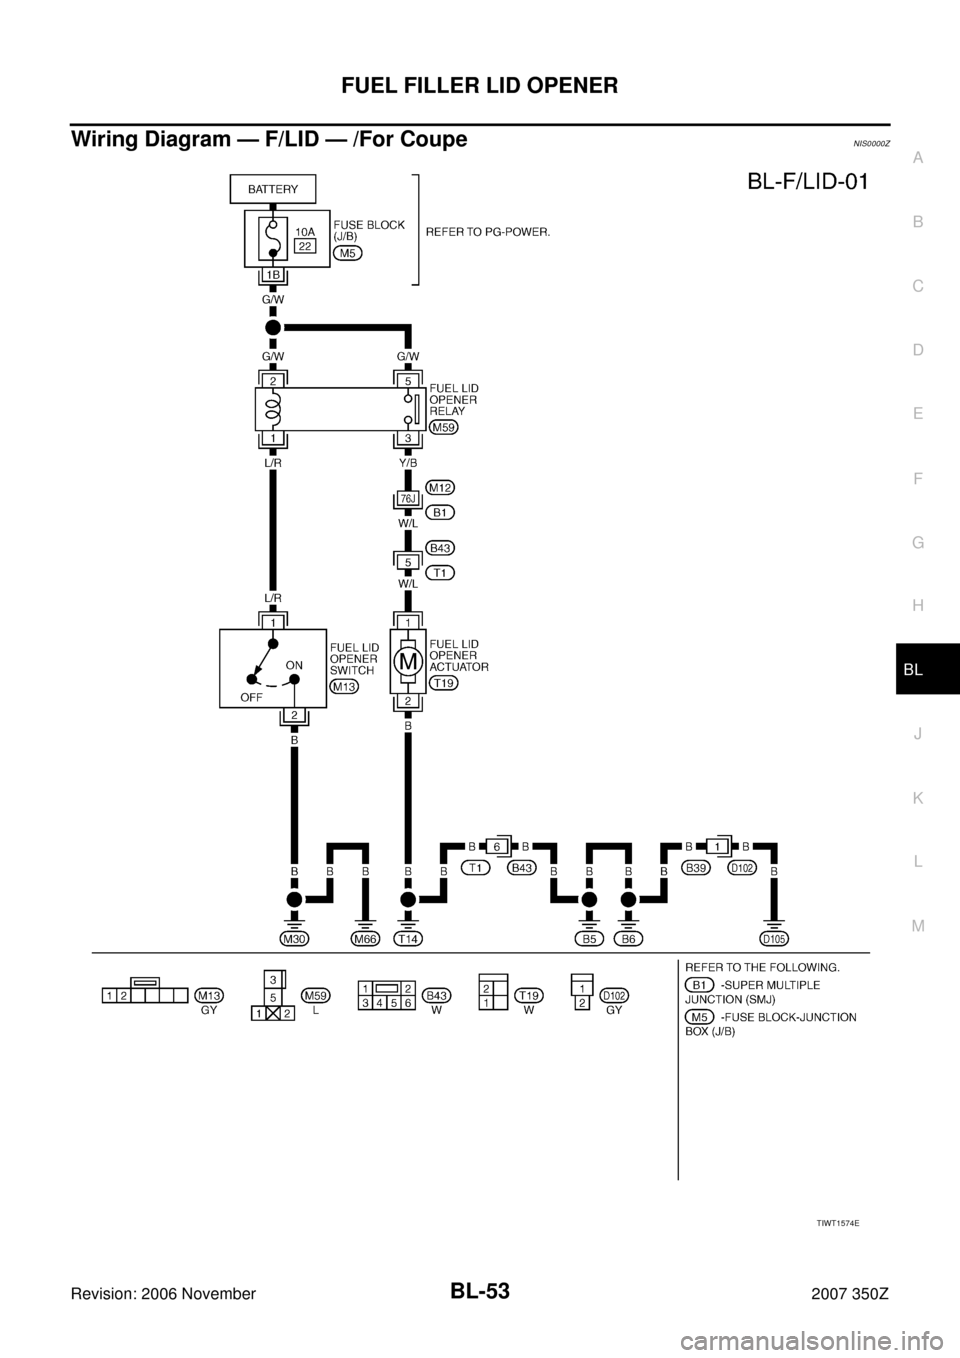 NISSAN 350Z 2007 Z33 Body, Lock And Security System Workshop Manual FUEL FILLER LID OPENER
BL-53
C
D
E
F
G
H
J
K
L
MA
B
BL
Revision: 2006 November2007 350Z
Wiring Diagram — F/LID — /For CoupeNIS0000Z
TIWT1574E 